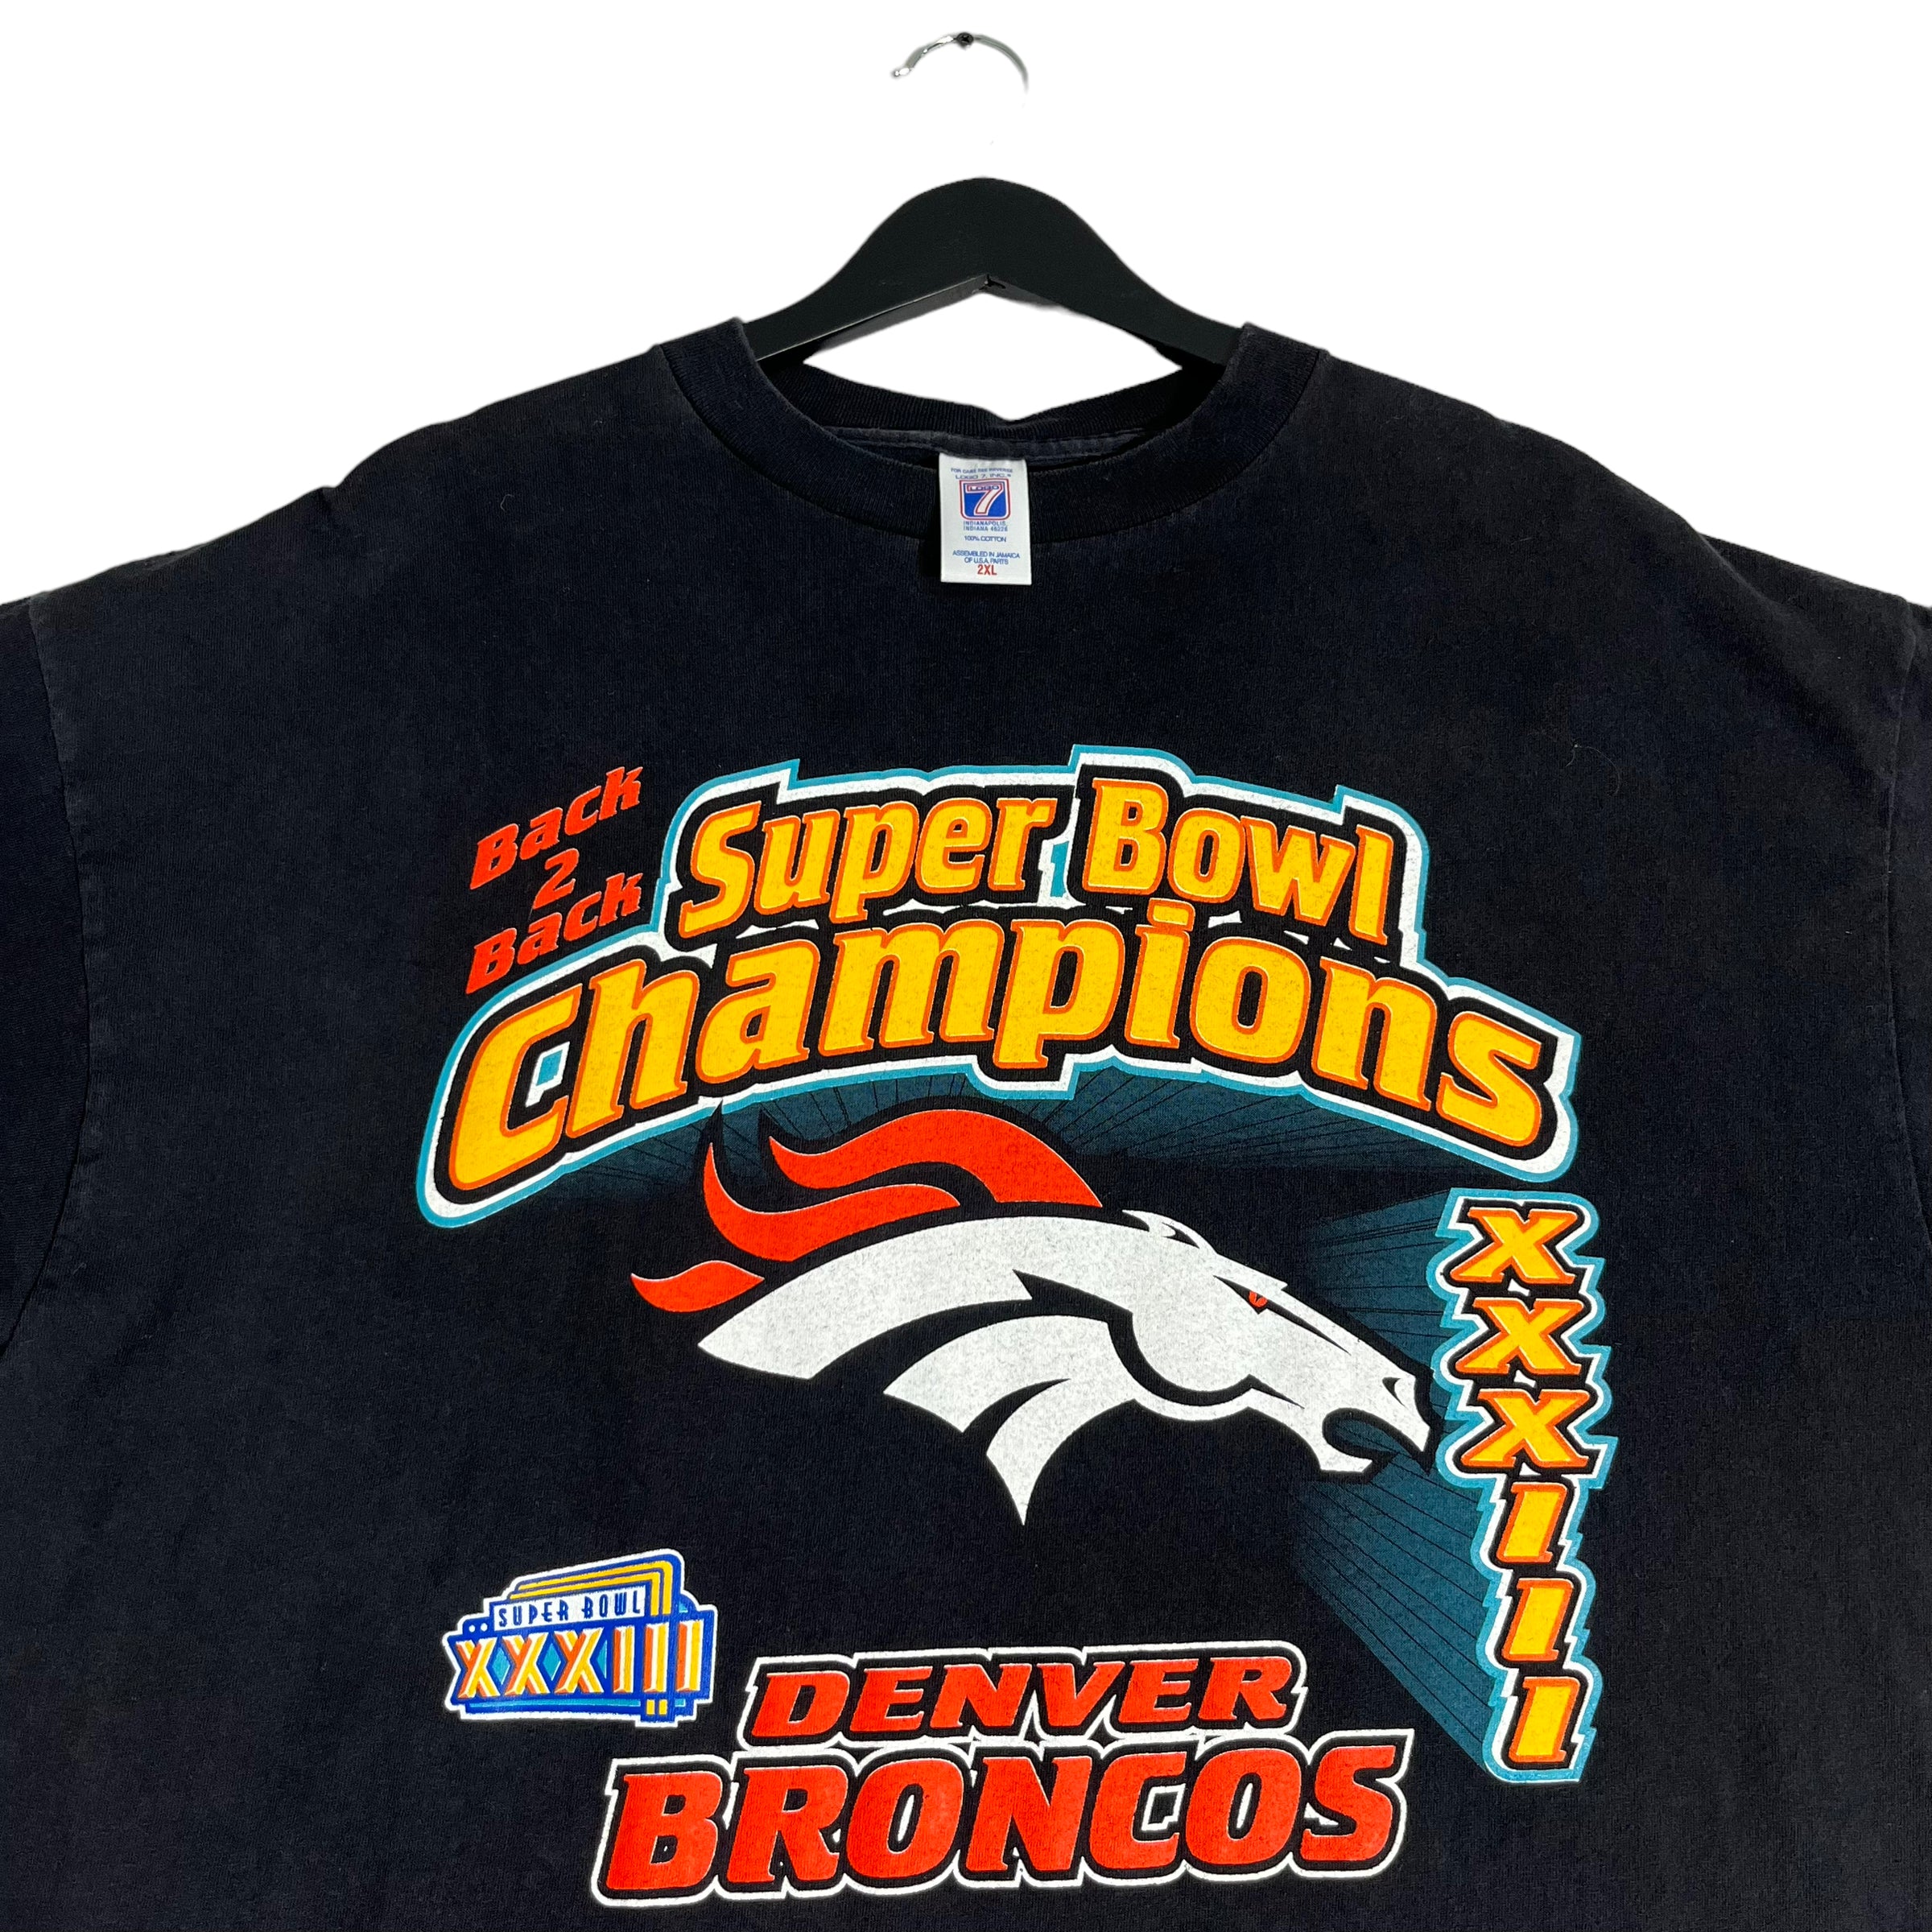 Vintage Denver Broncos Super Bowl Champs Tee 1999